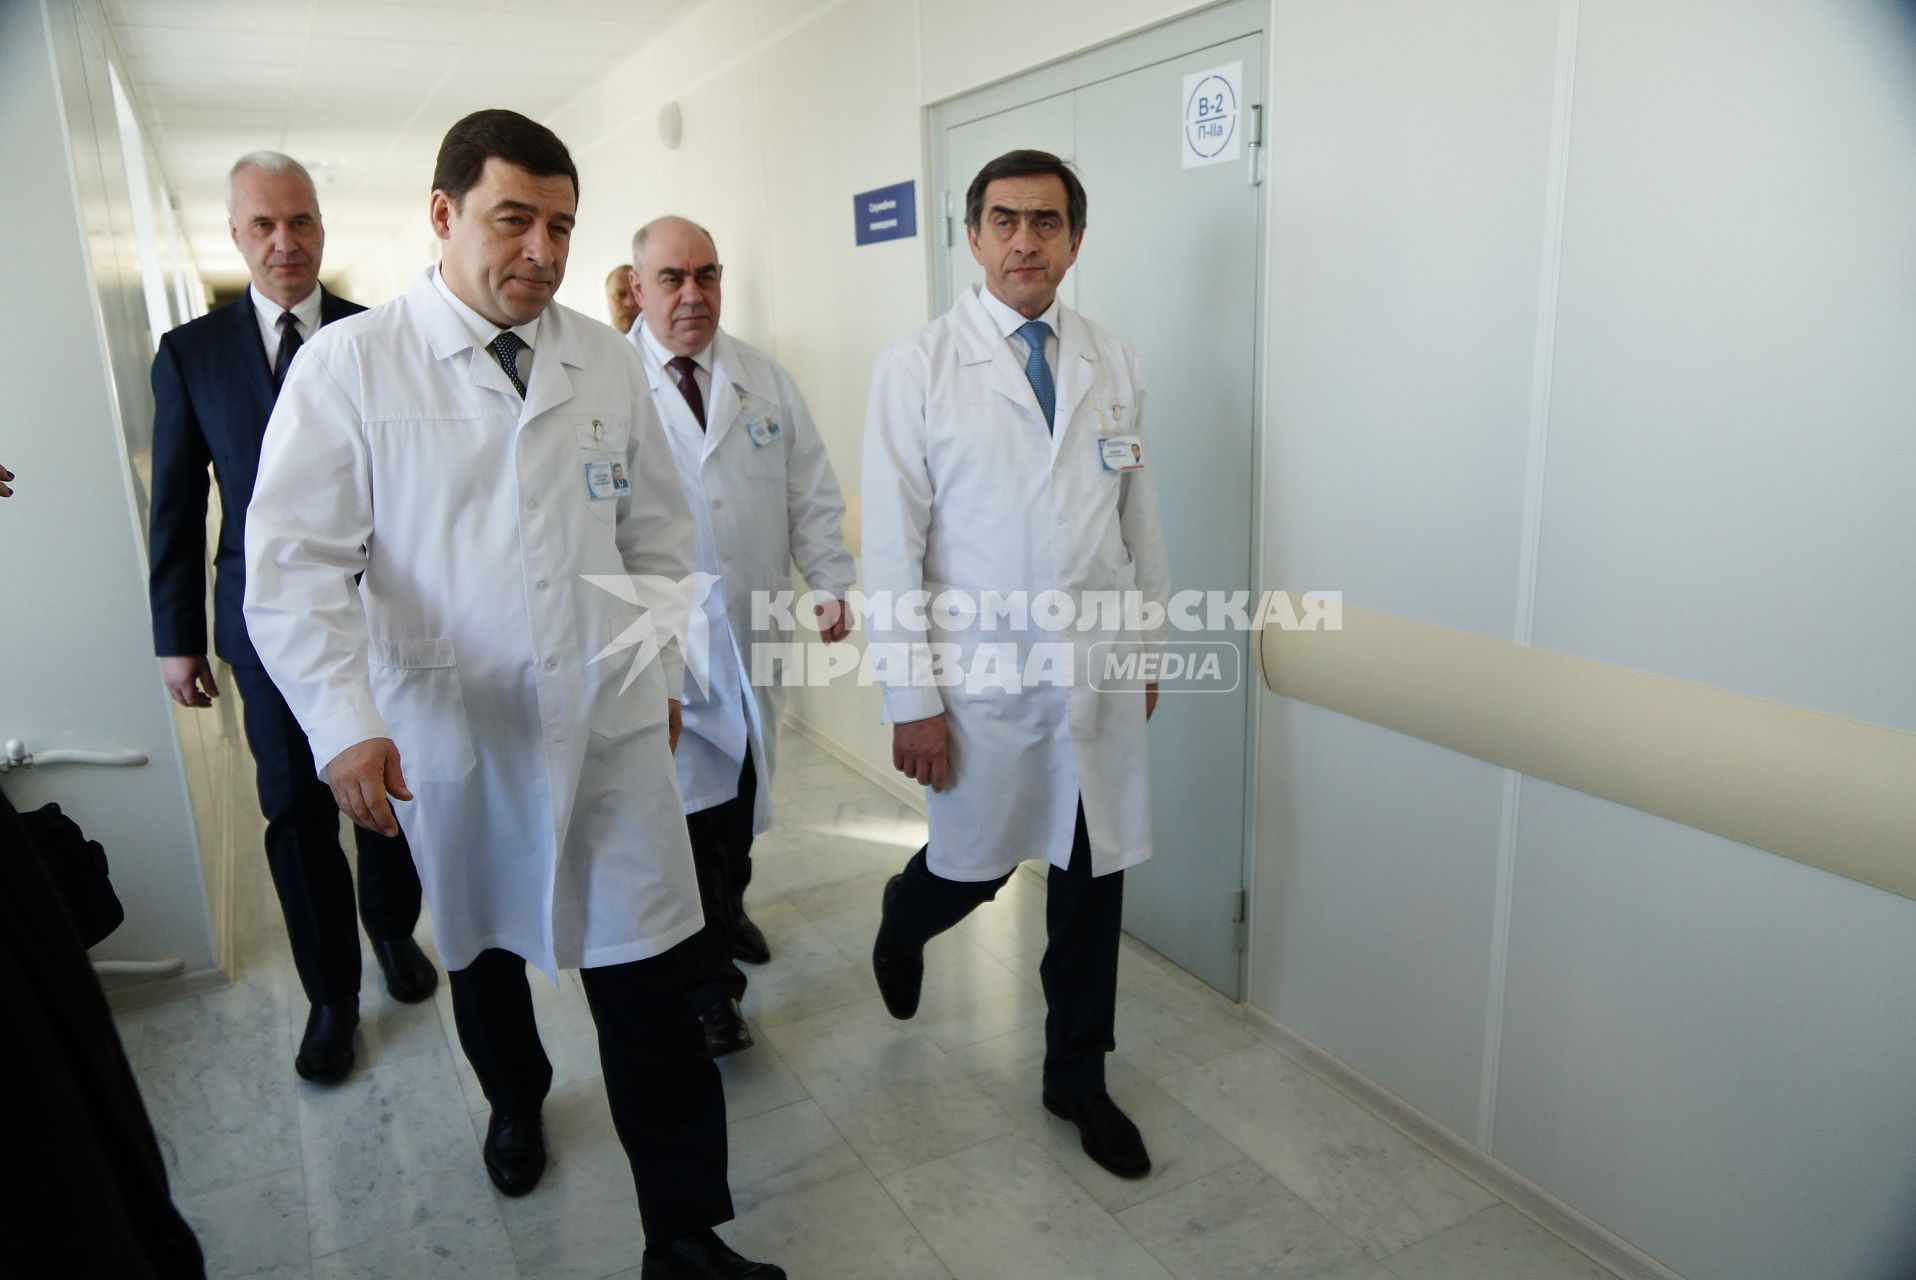 губернатор Свердловской области Евгений Куйвашев (слева) и главный врач ОКБ№1 Феликс Бадаев (в центре справа) идут по коридору отделения трансплантологии костного мозга областной клинической болницы №1 в Екатеринбурге